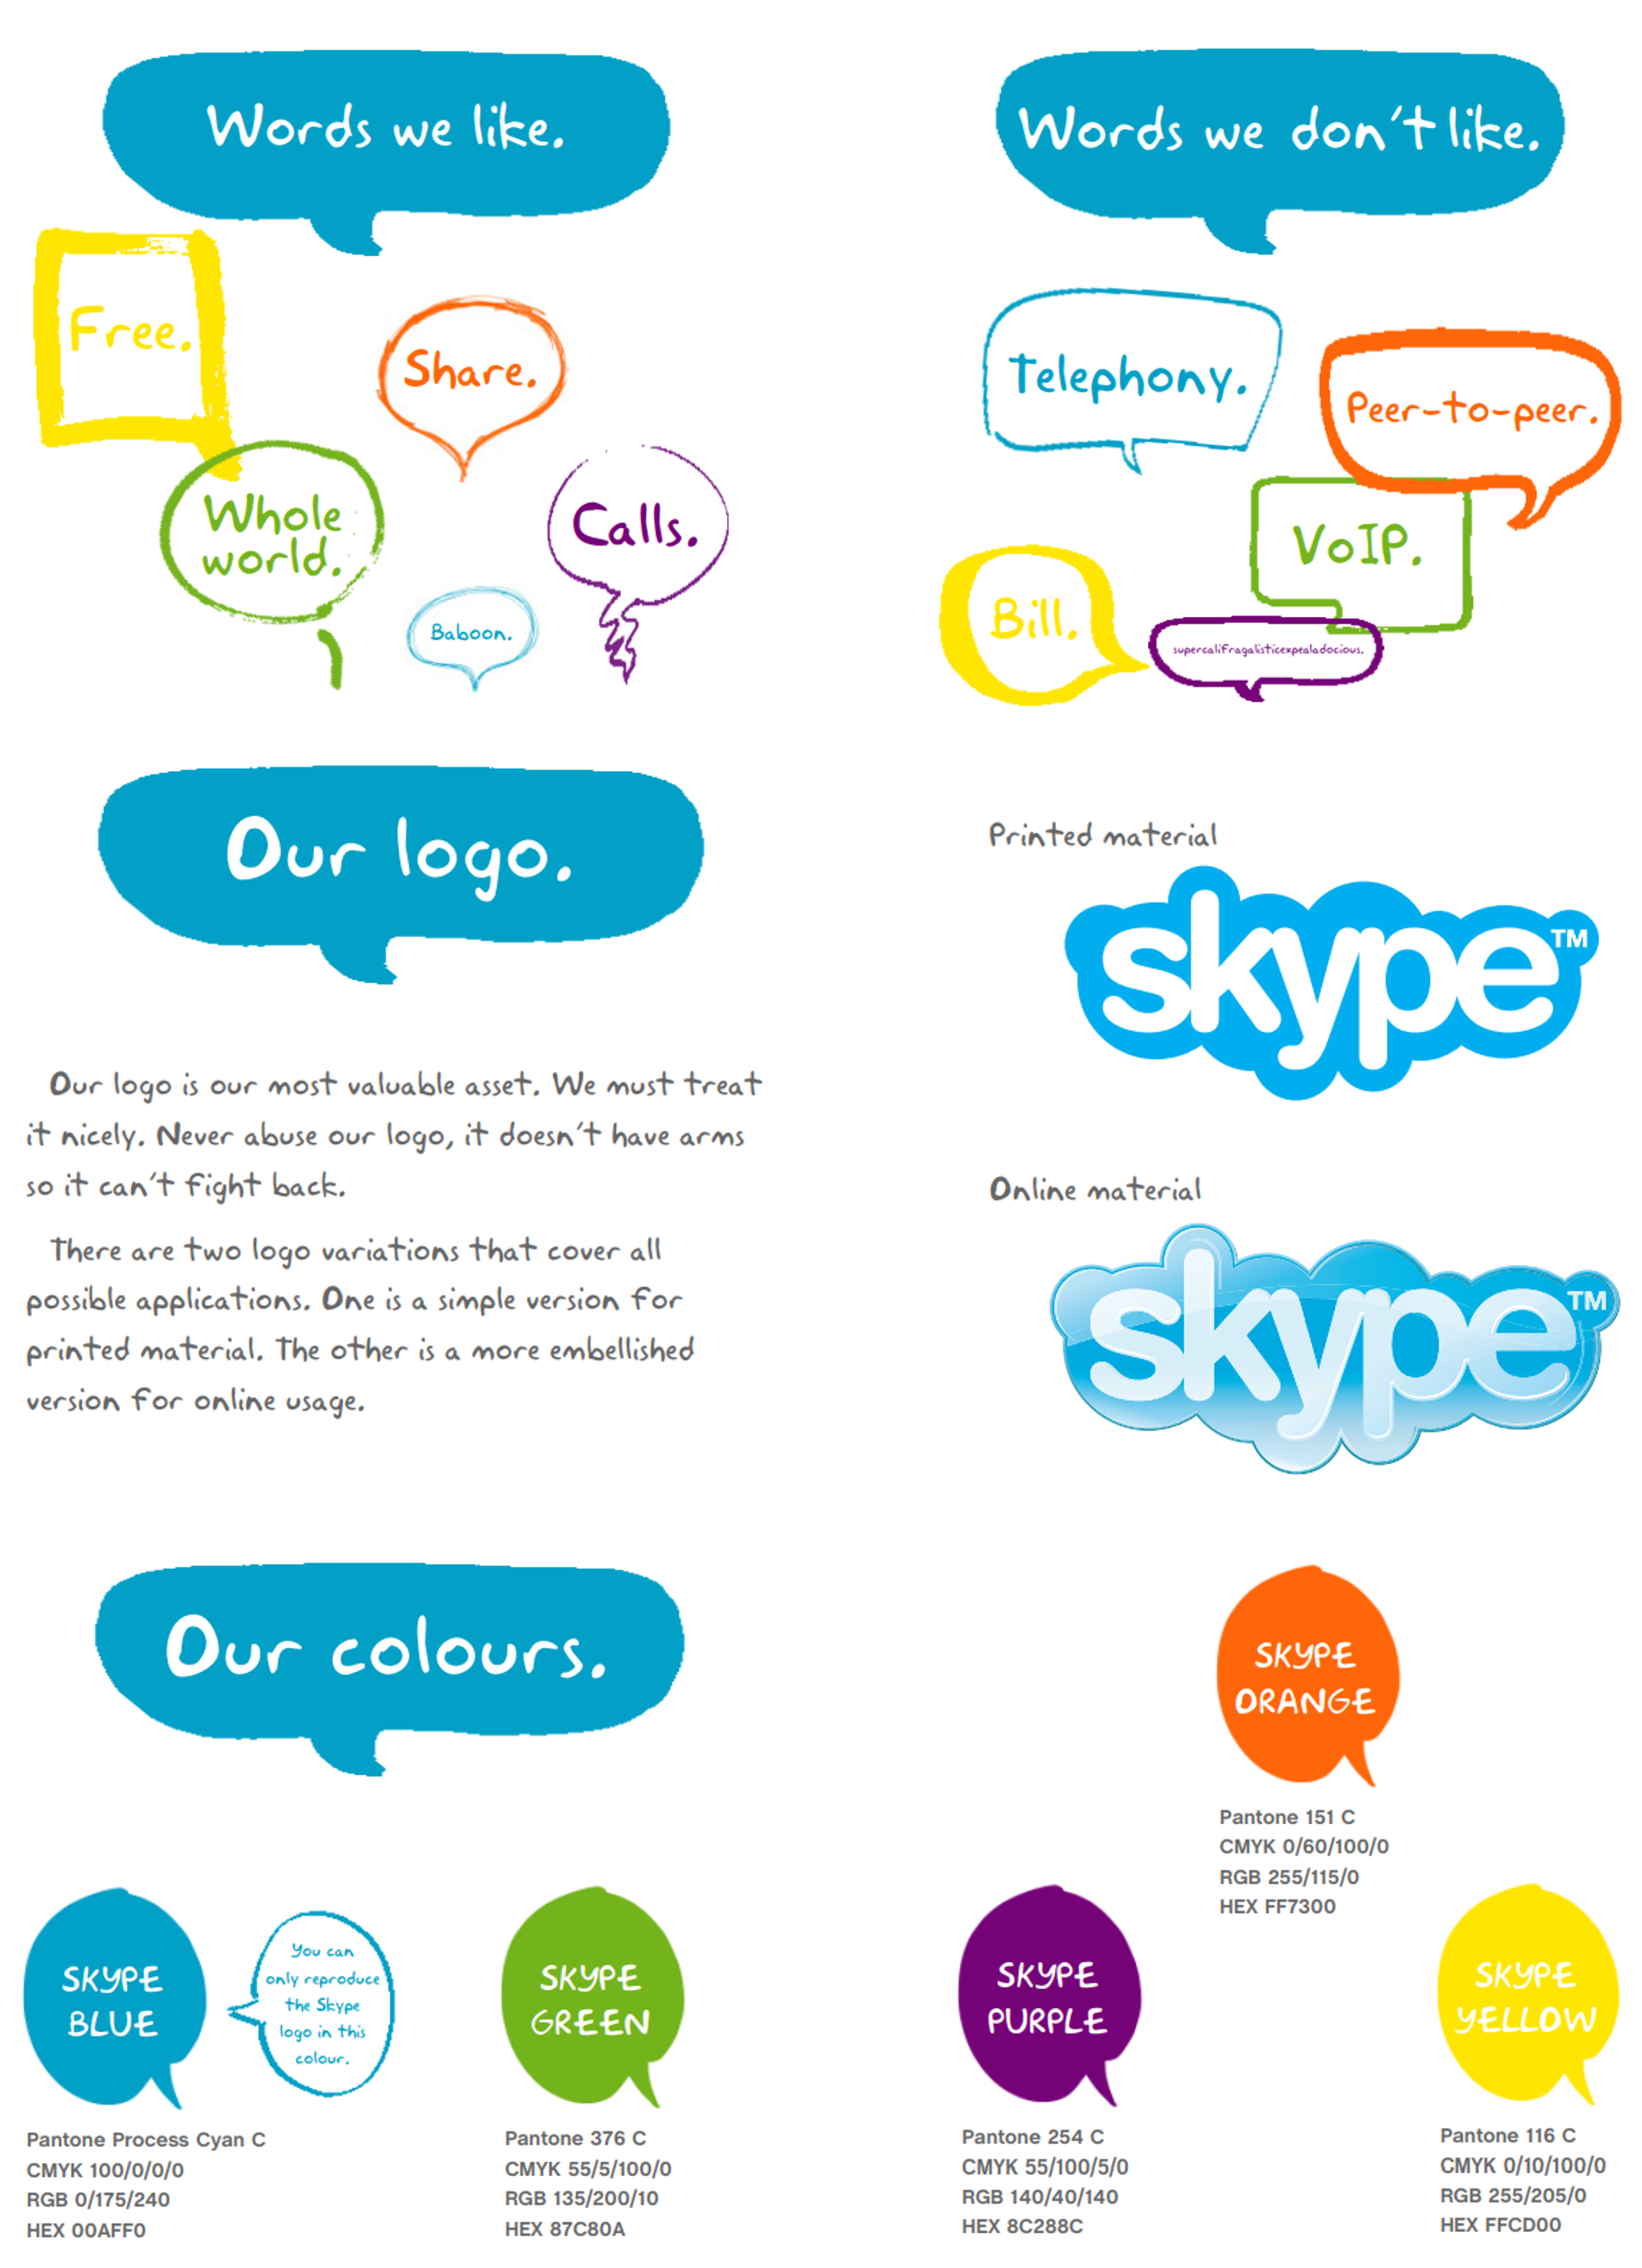  Skype's social media style guide